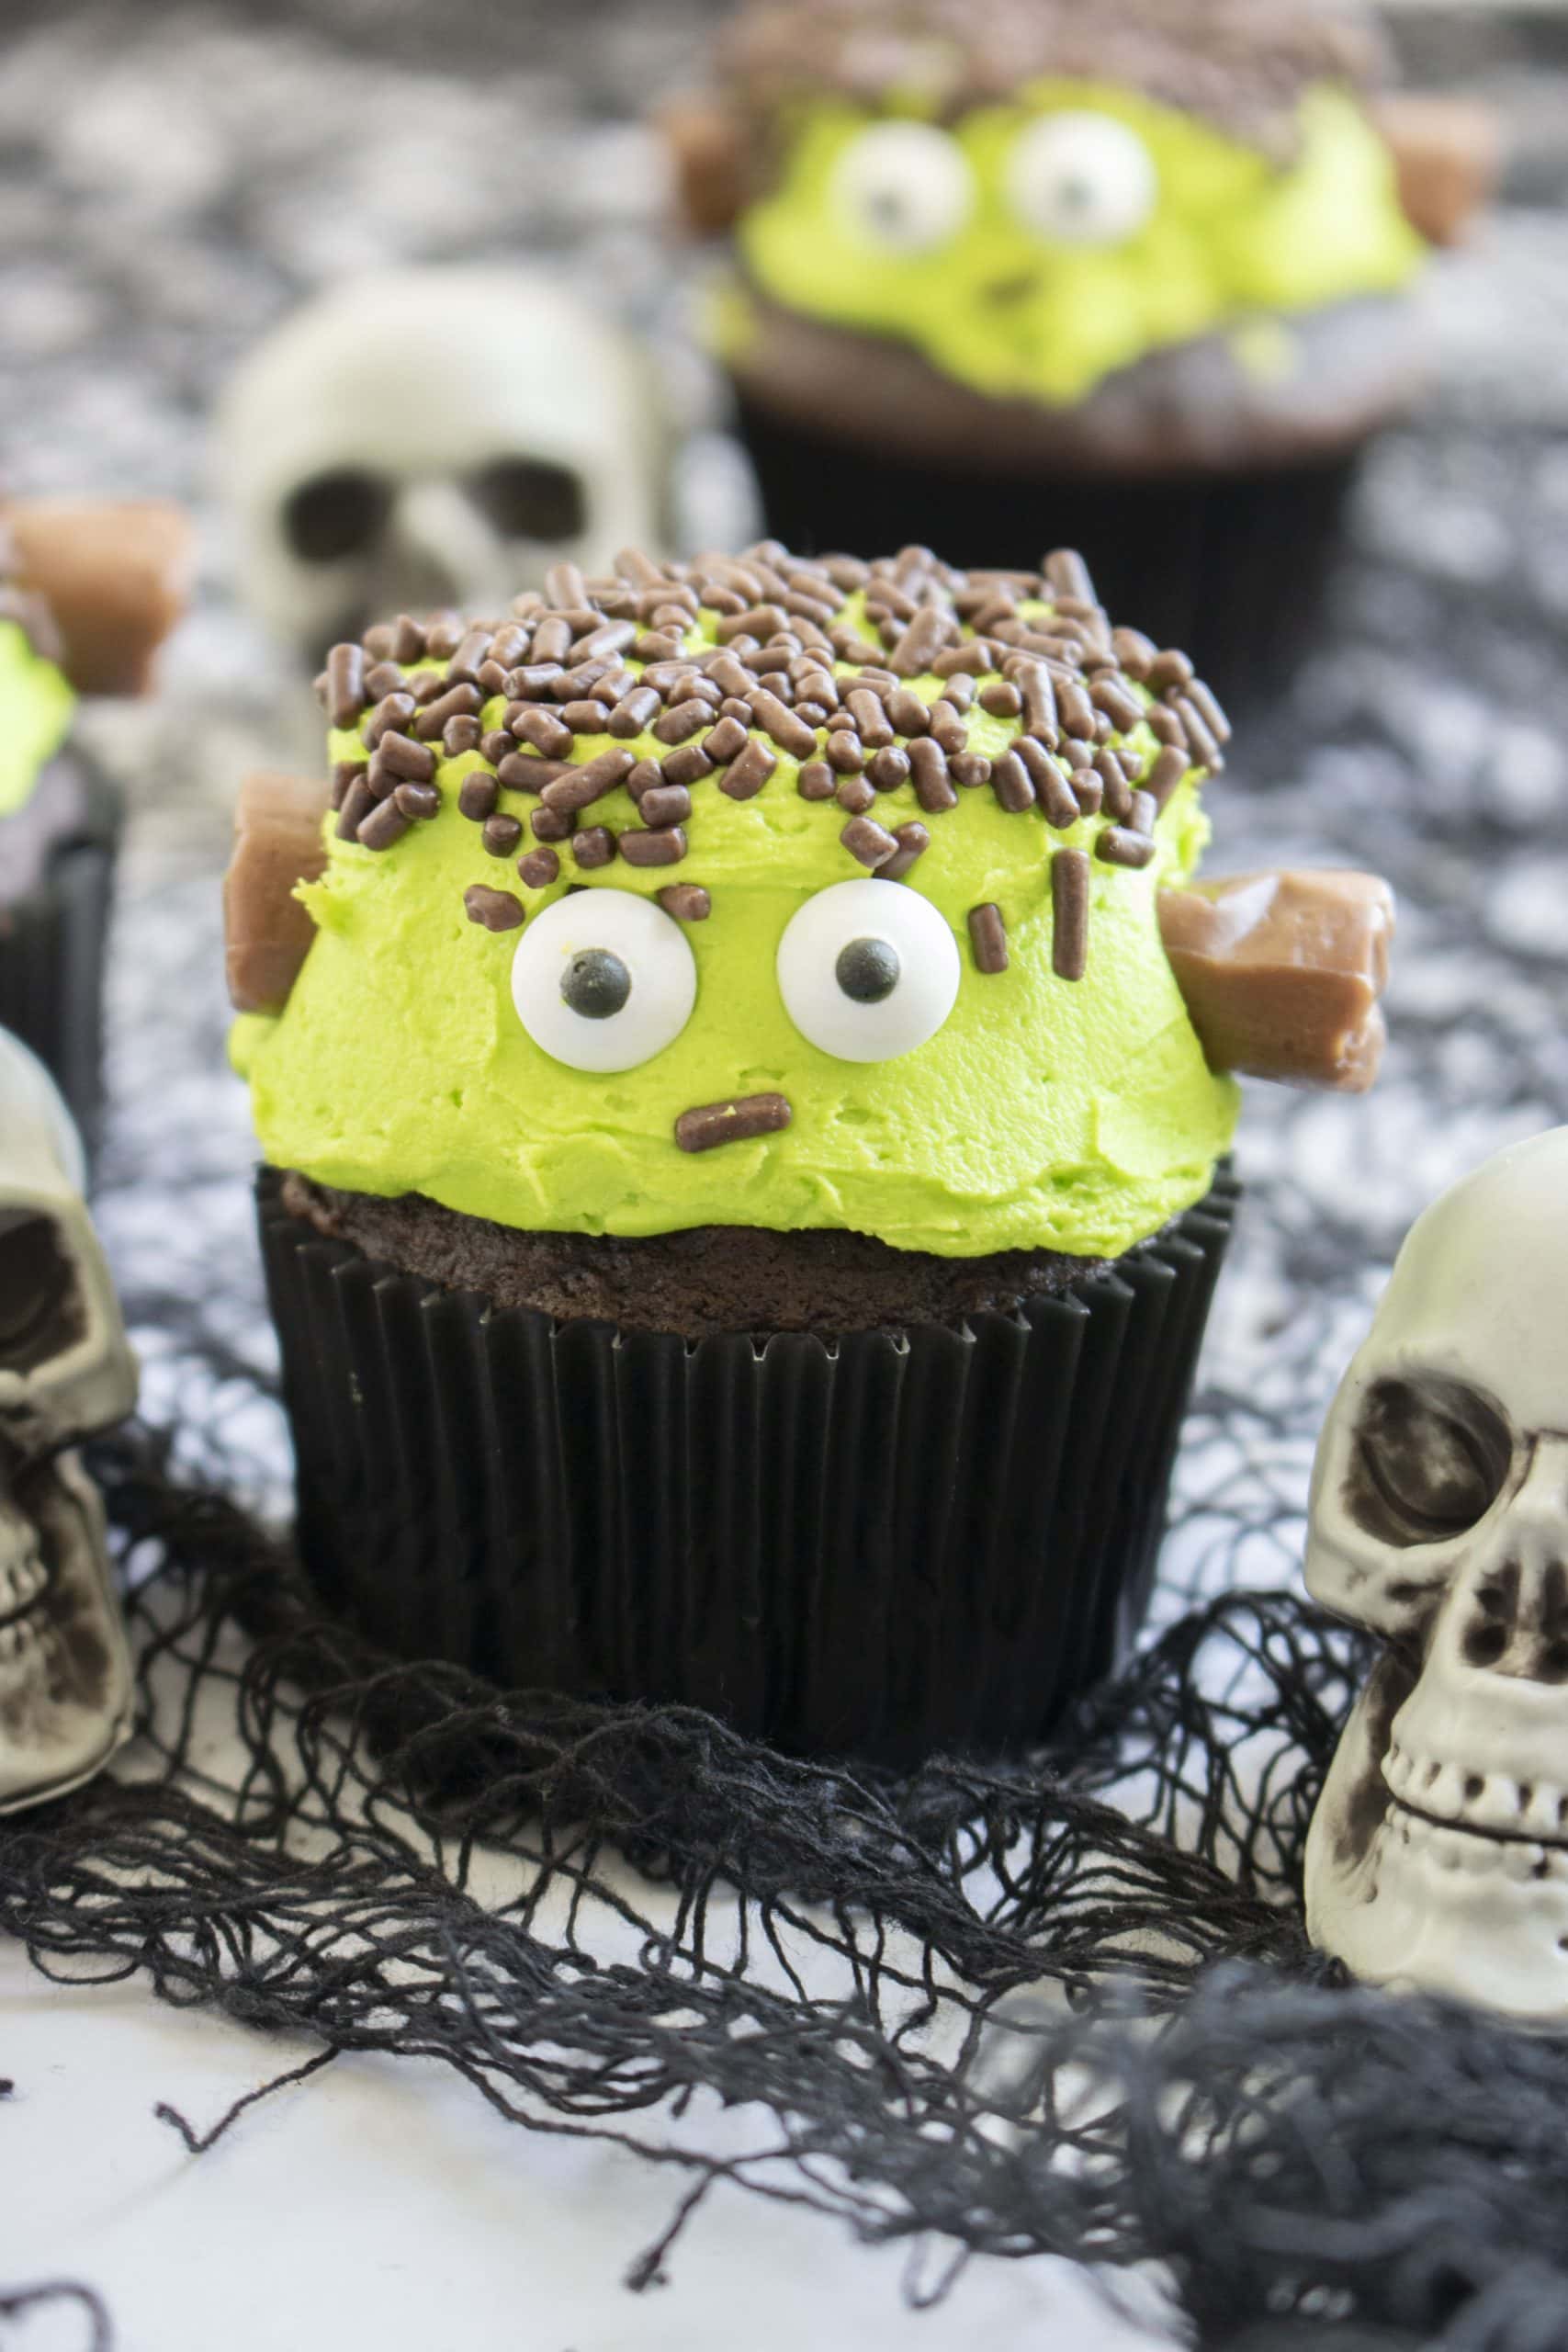 Frankenstein Cupcakes